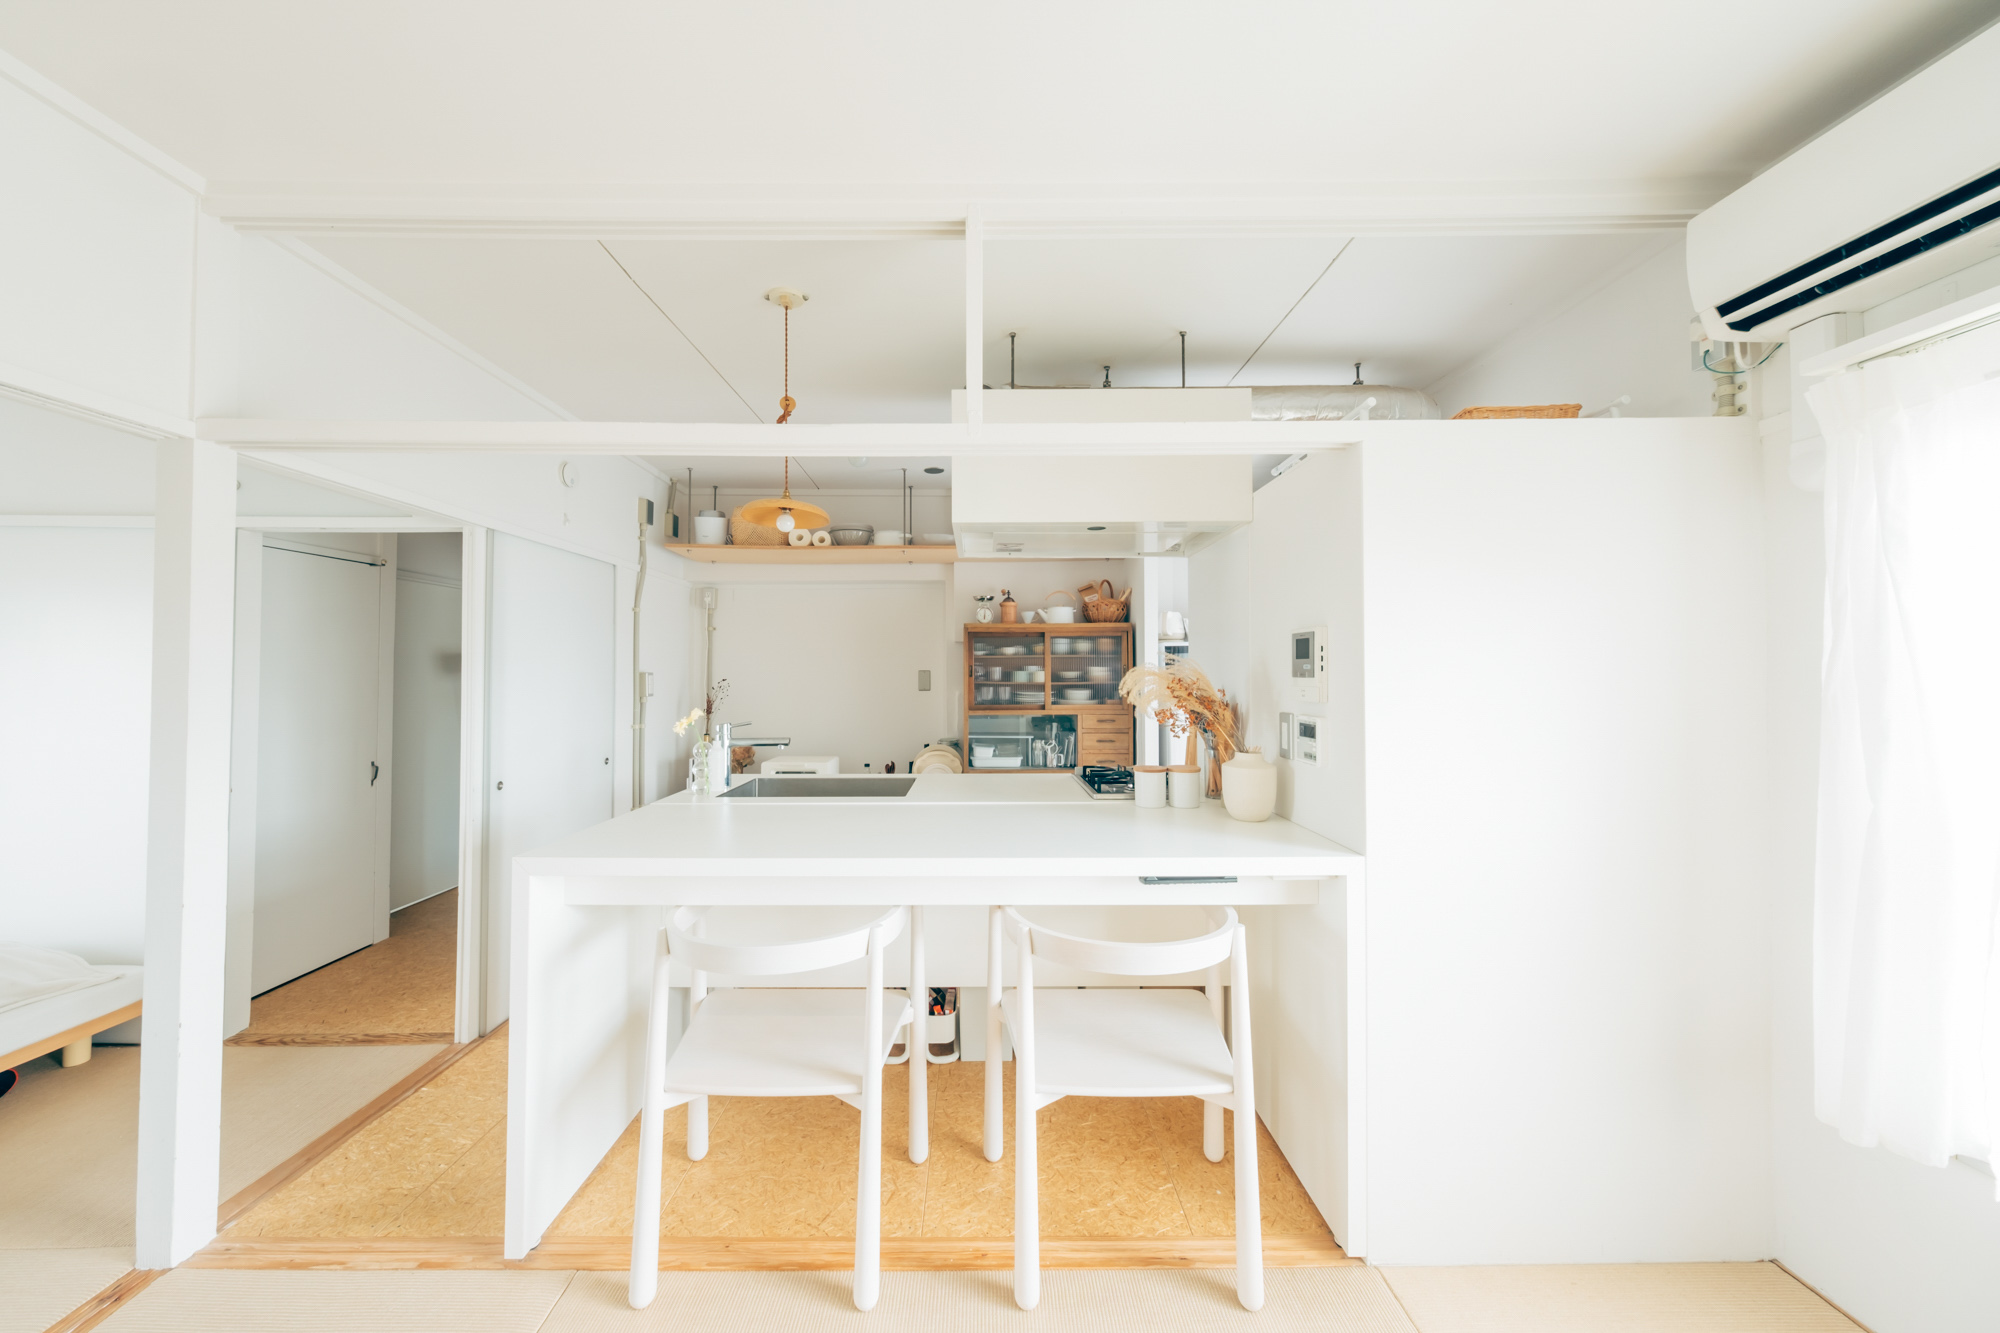 こちらは、MUJI×UR団地リノベーションプロジェクトの47㎡ほどのお部屋。真っ白で統一された対面キッチン。備え付けのカウンターに白い椅子を合わせて、とてもシンプルで洗練された印象で使われています。